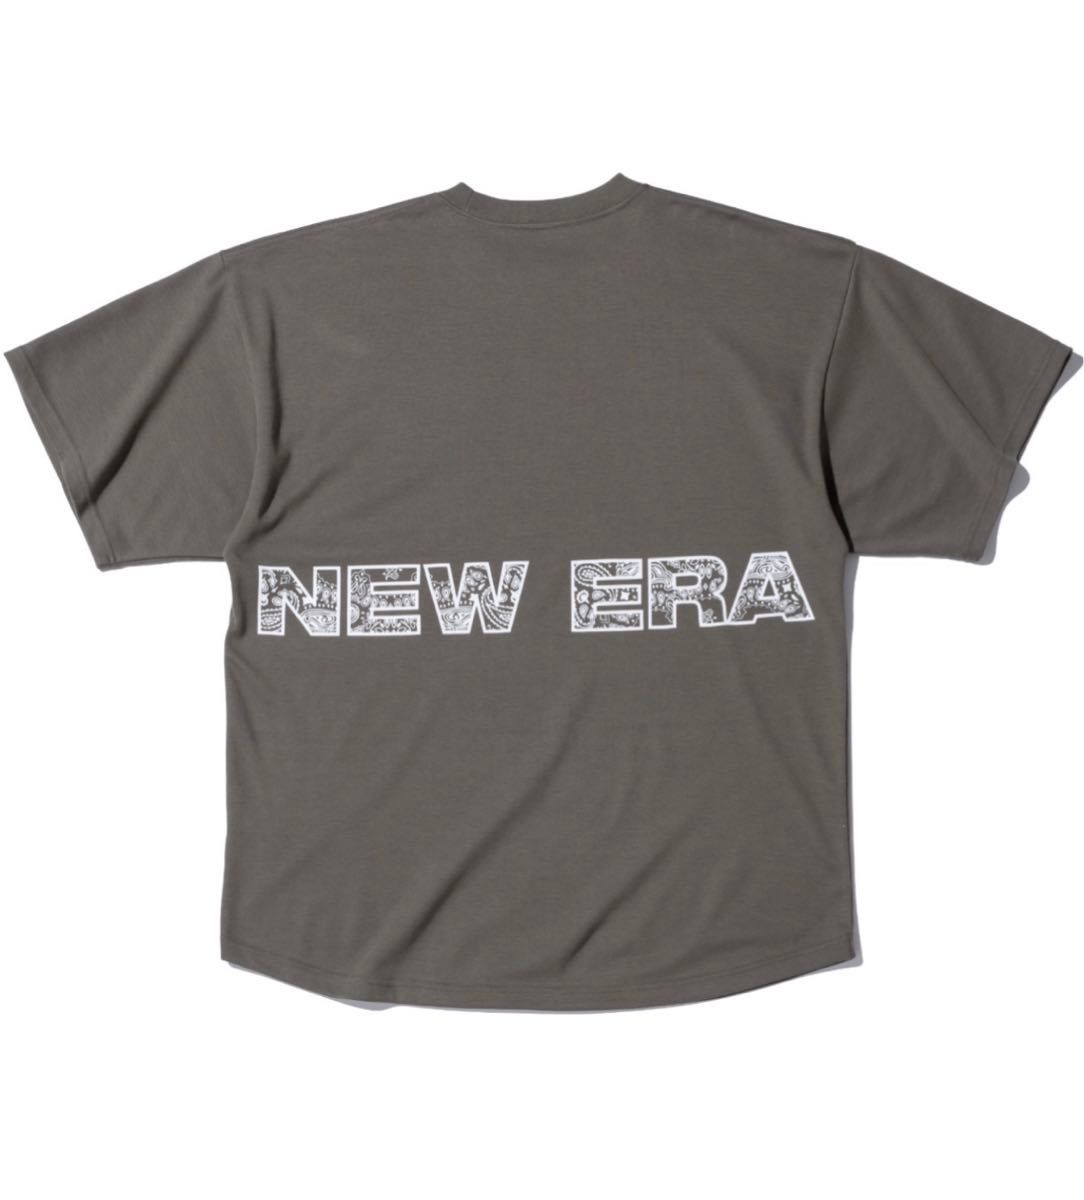 NEW ERA Tシャツ XL オリーブ ペイズリー オーバーサイズ NEWERA パフォーマンスアパレル ニューエラ バンダナ